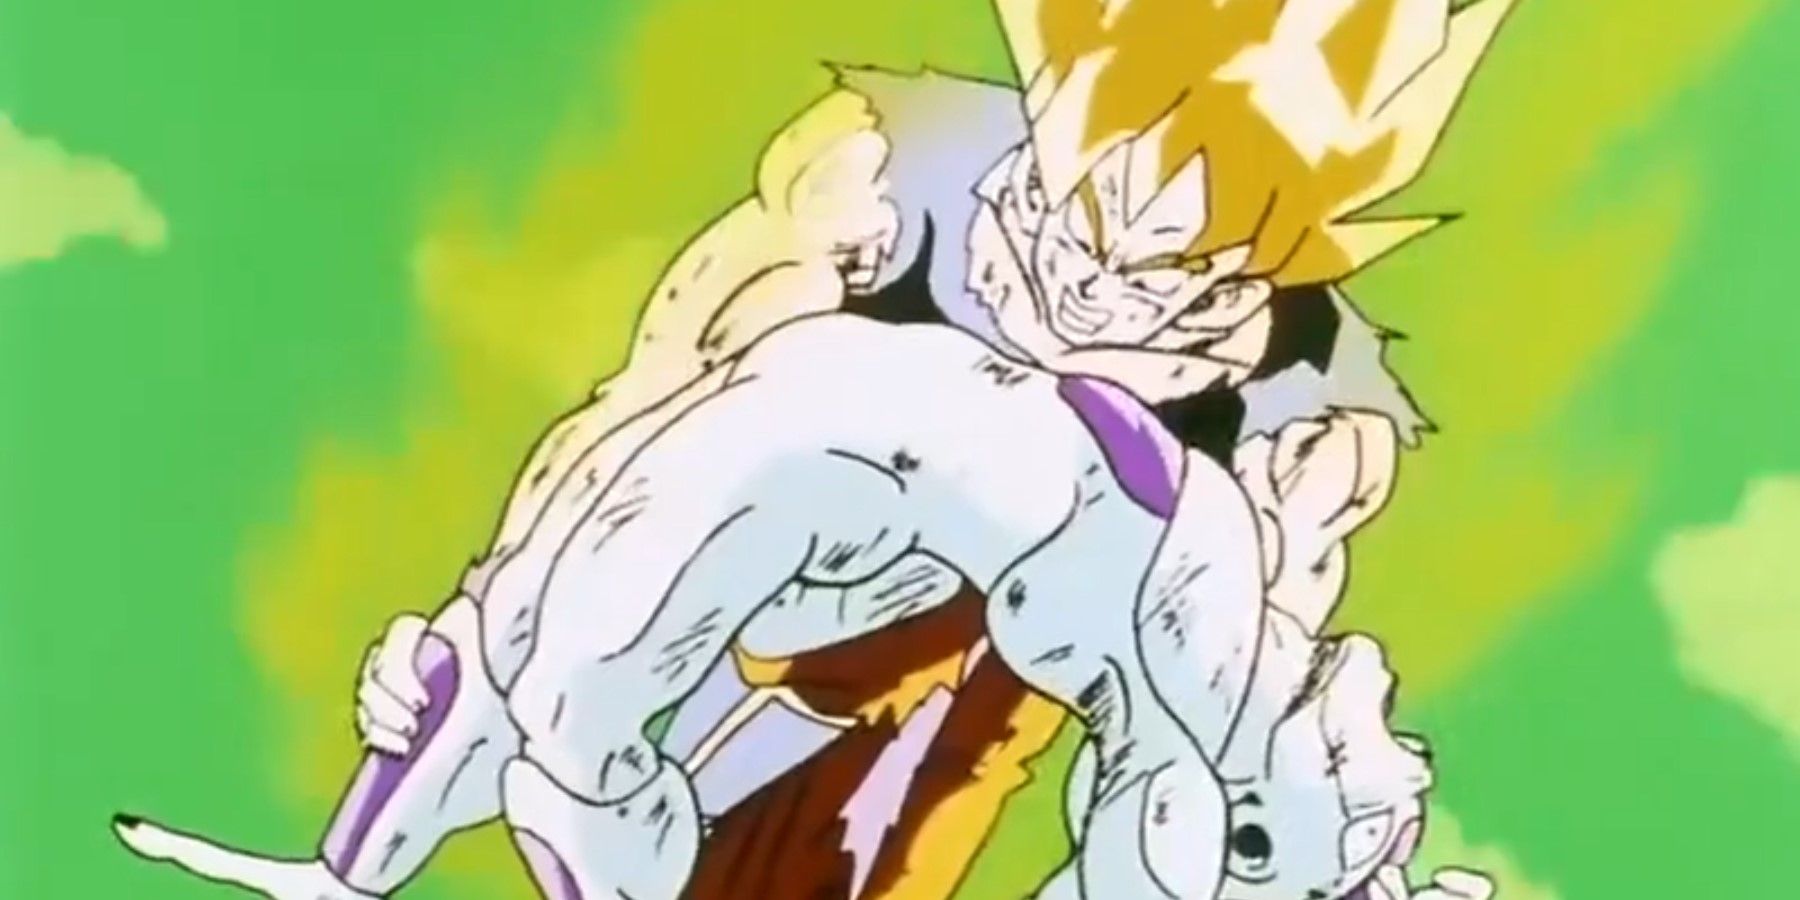 DBZ Goku fighting Frieza as a Super Saiyan